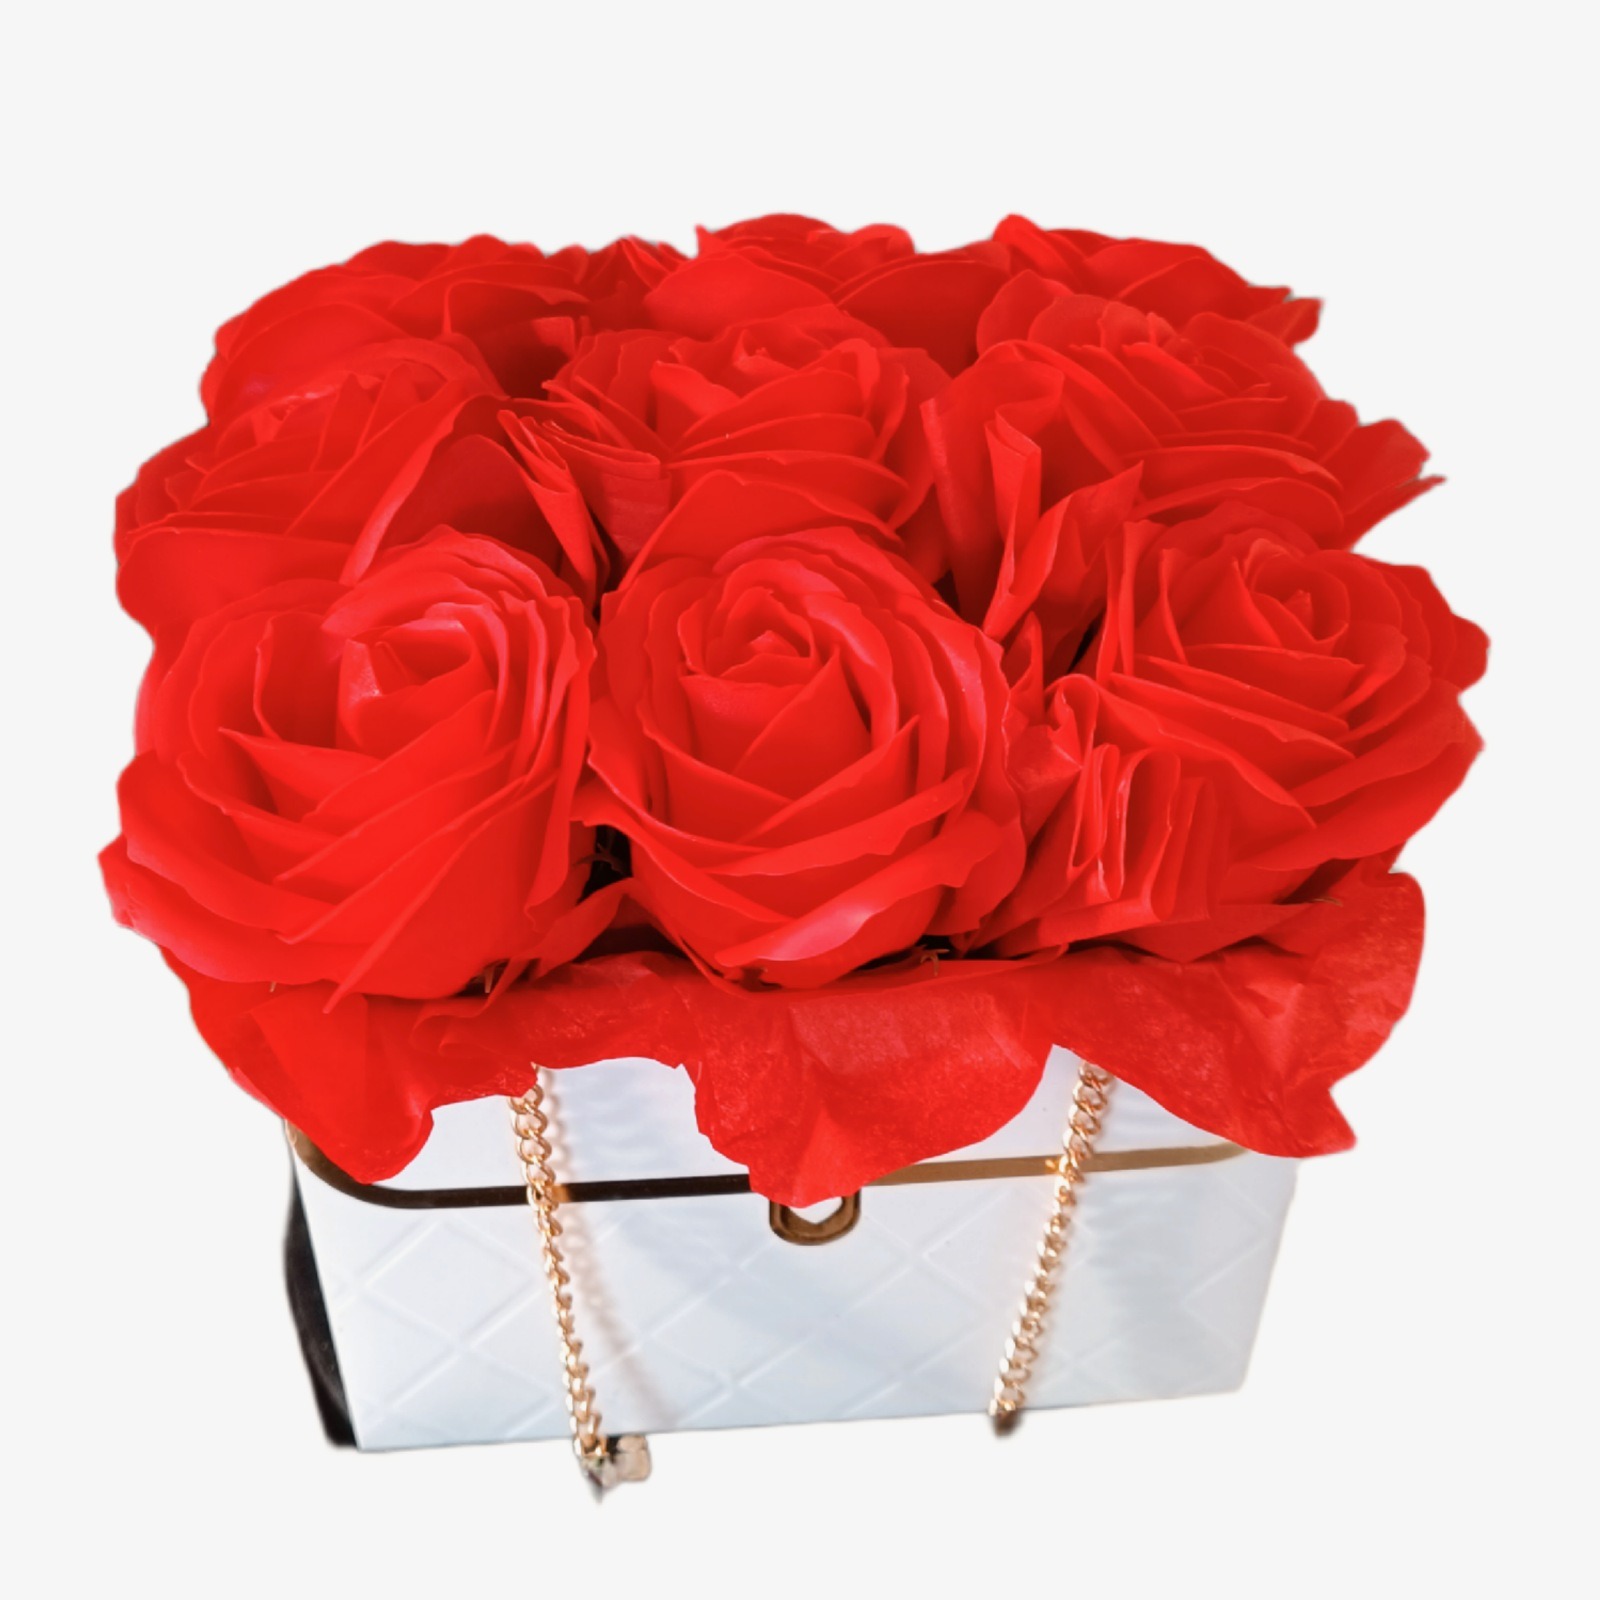 Trandafiri rosii de sapun in geanta